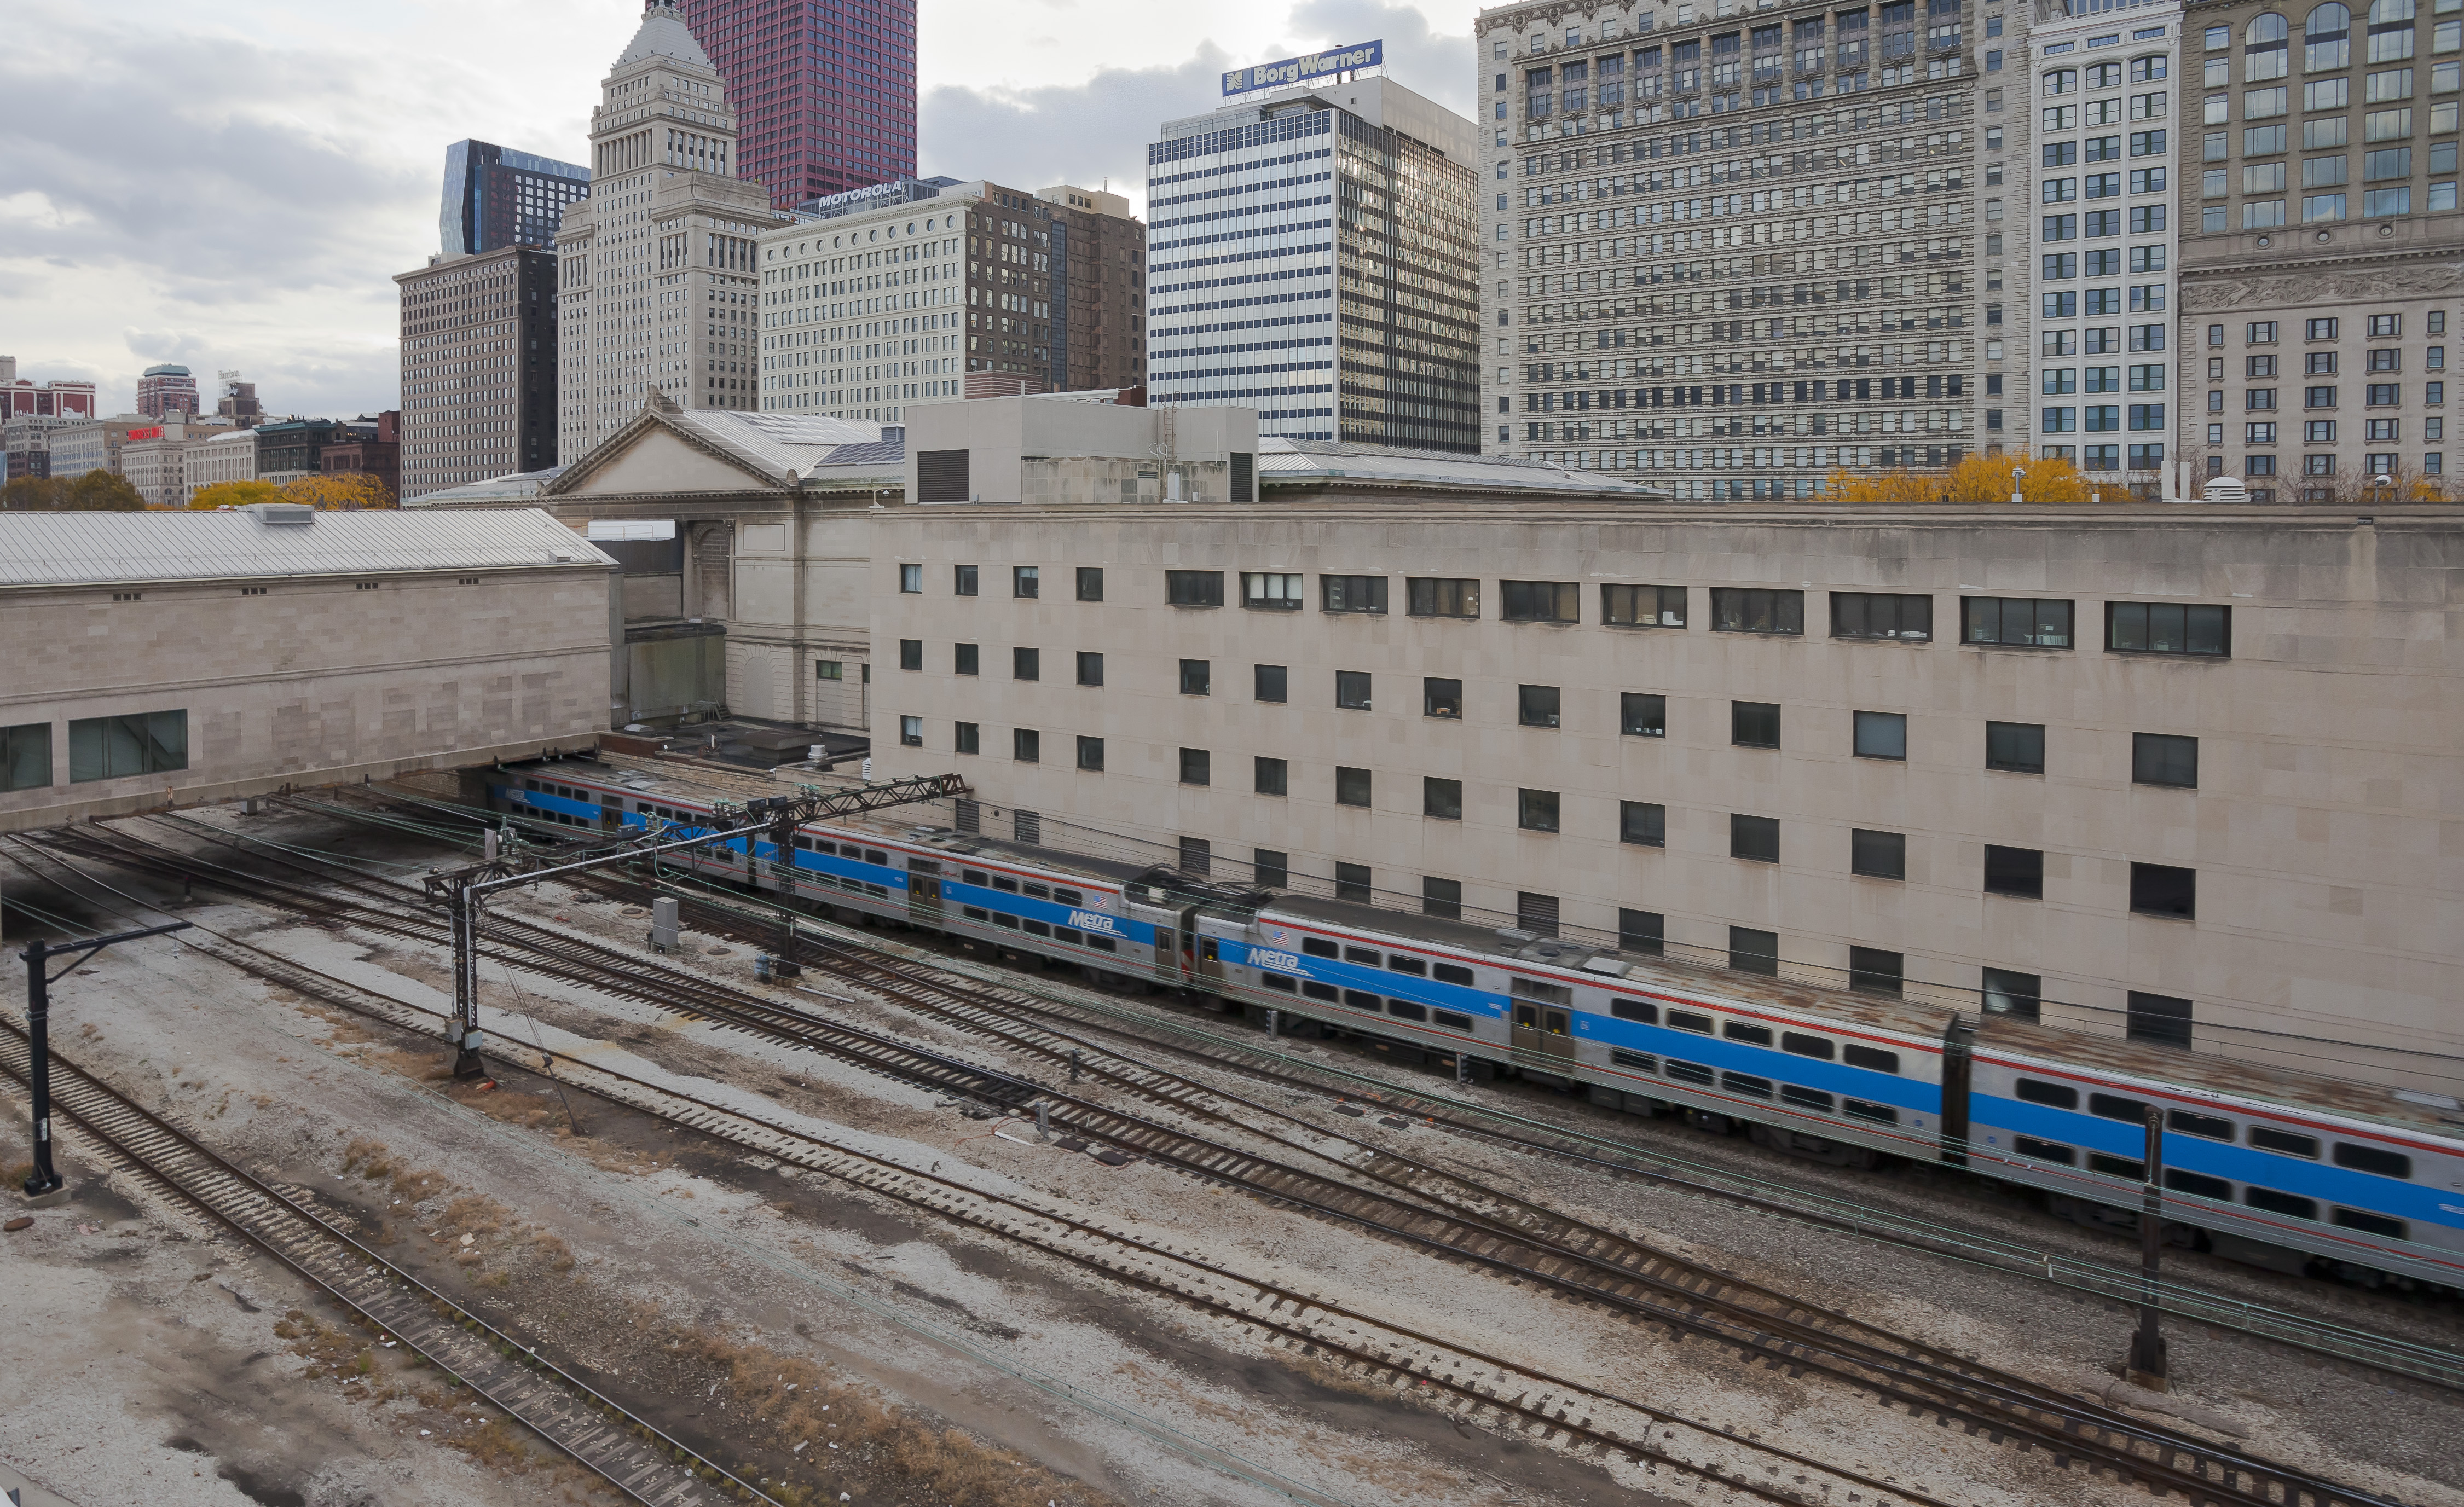 Ferrocarril junto a E Monroe St, Chicago, Illinois, Estados Unidos, 2012-10-20, DD 01